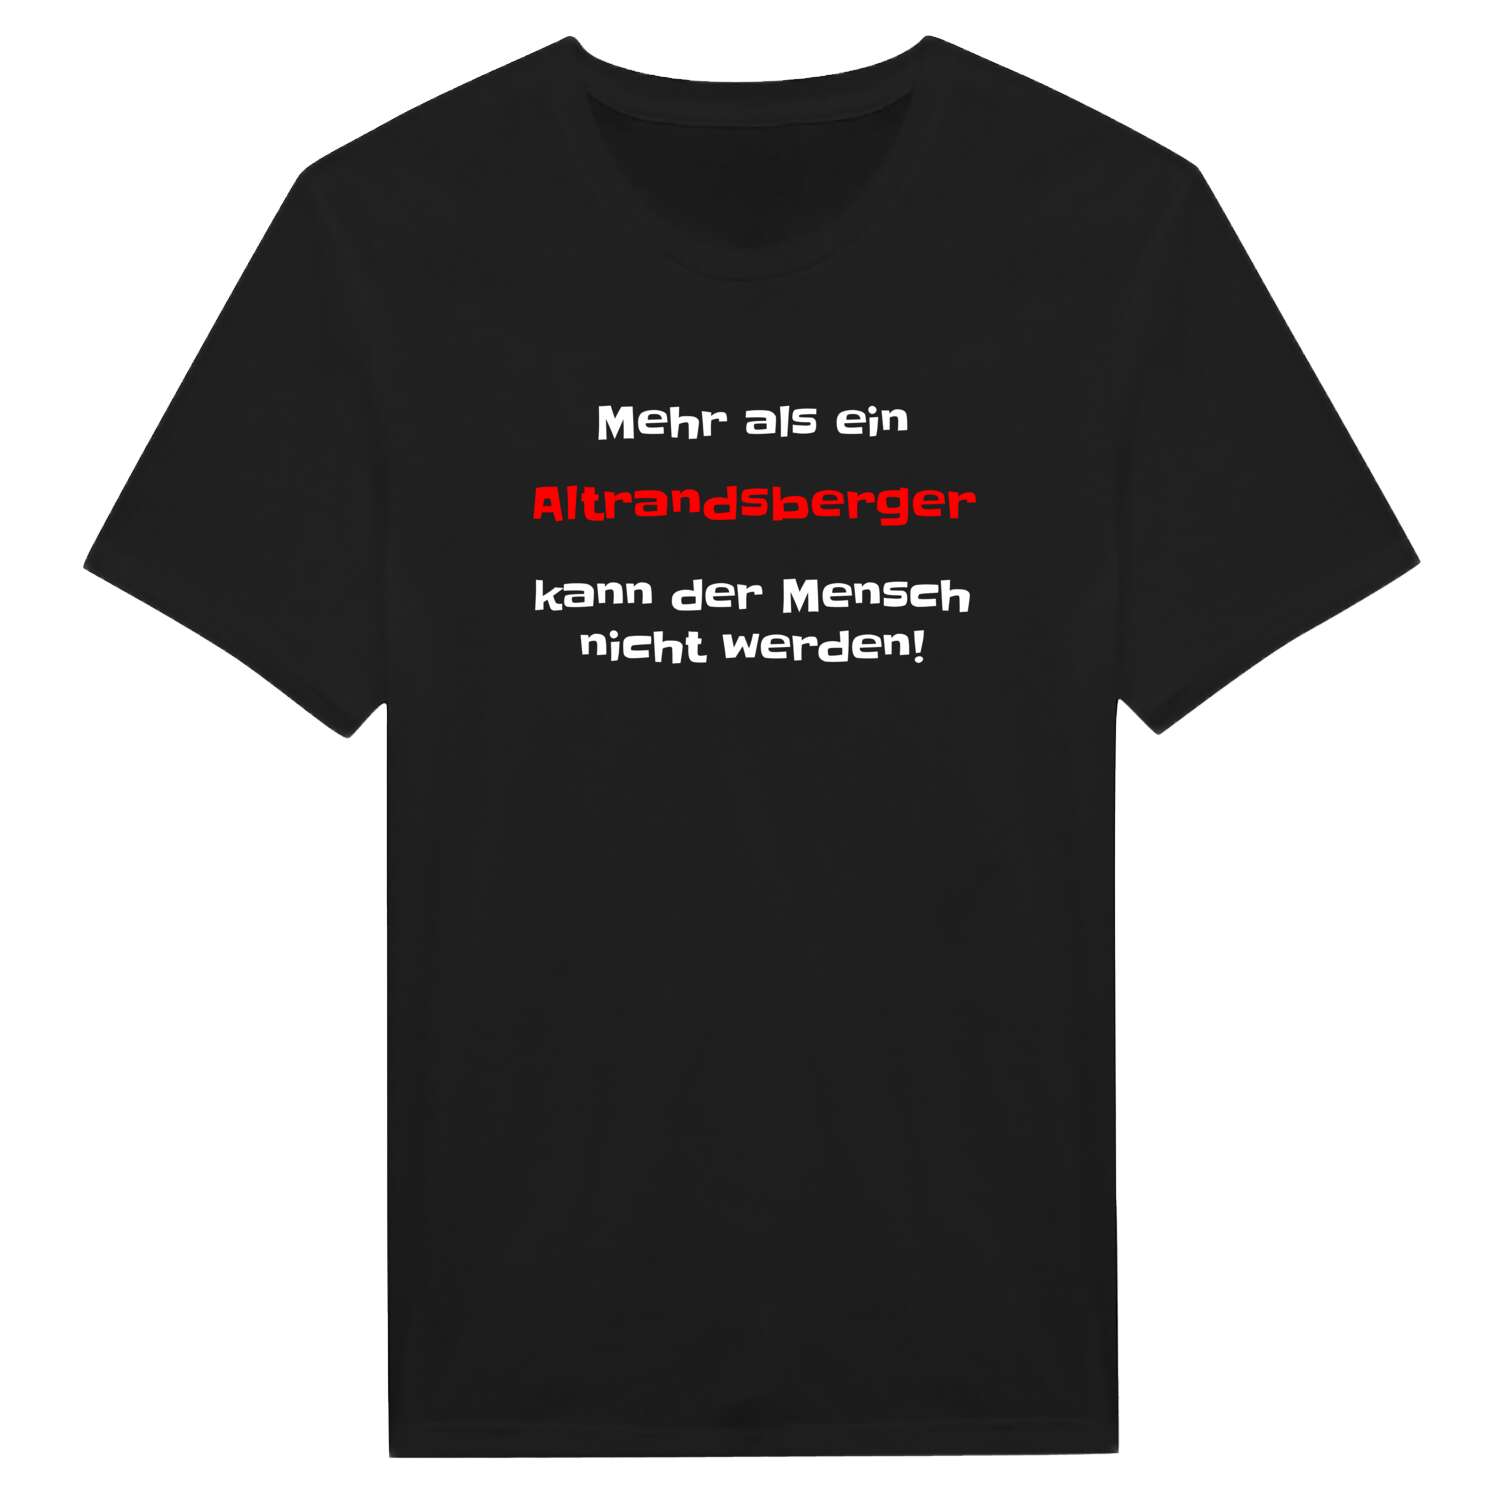 Altrandsberg T-Shirt »Mehr als ein«